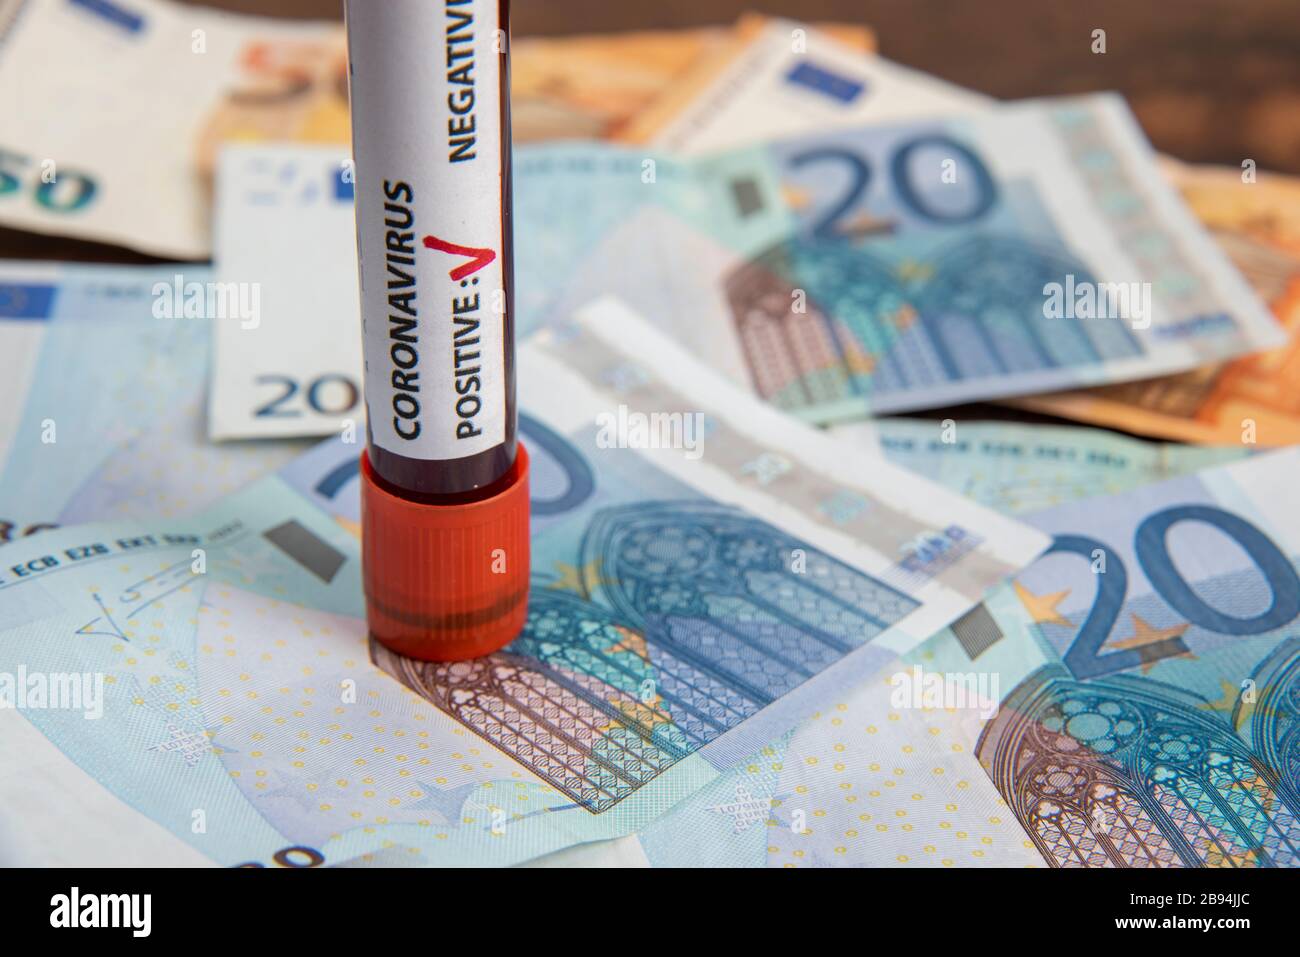 le coronavirus covid-19 teste le tube sanguin sur les billets en euros Banque D'Images